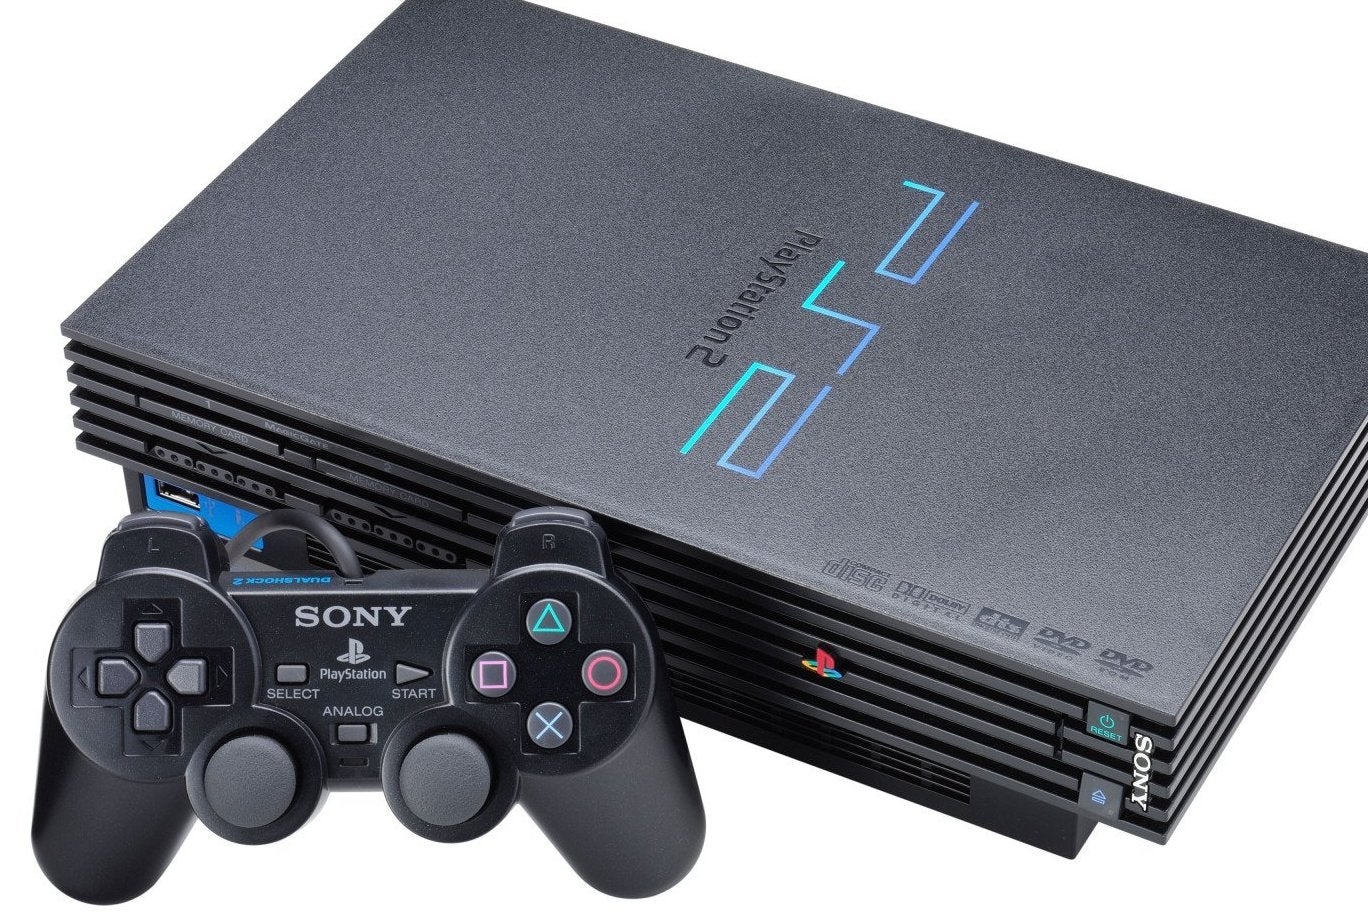 Immagine di PlayStation 2 votata come miglior console di sempre dai clienti di Amazon UK